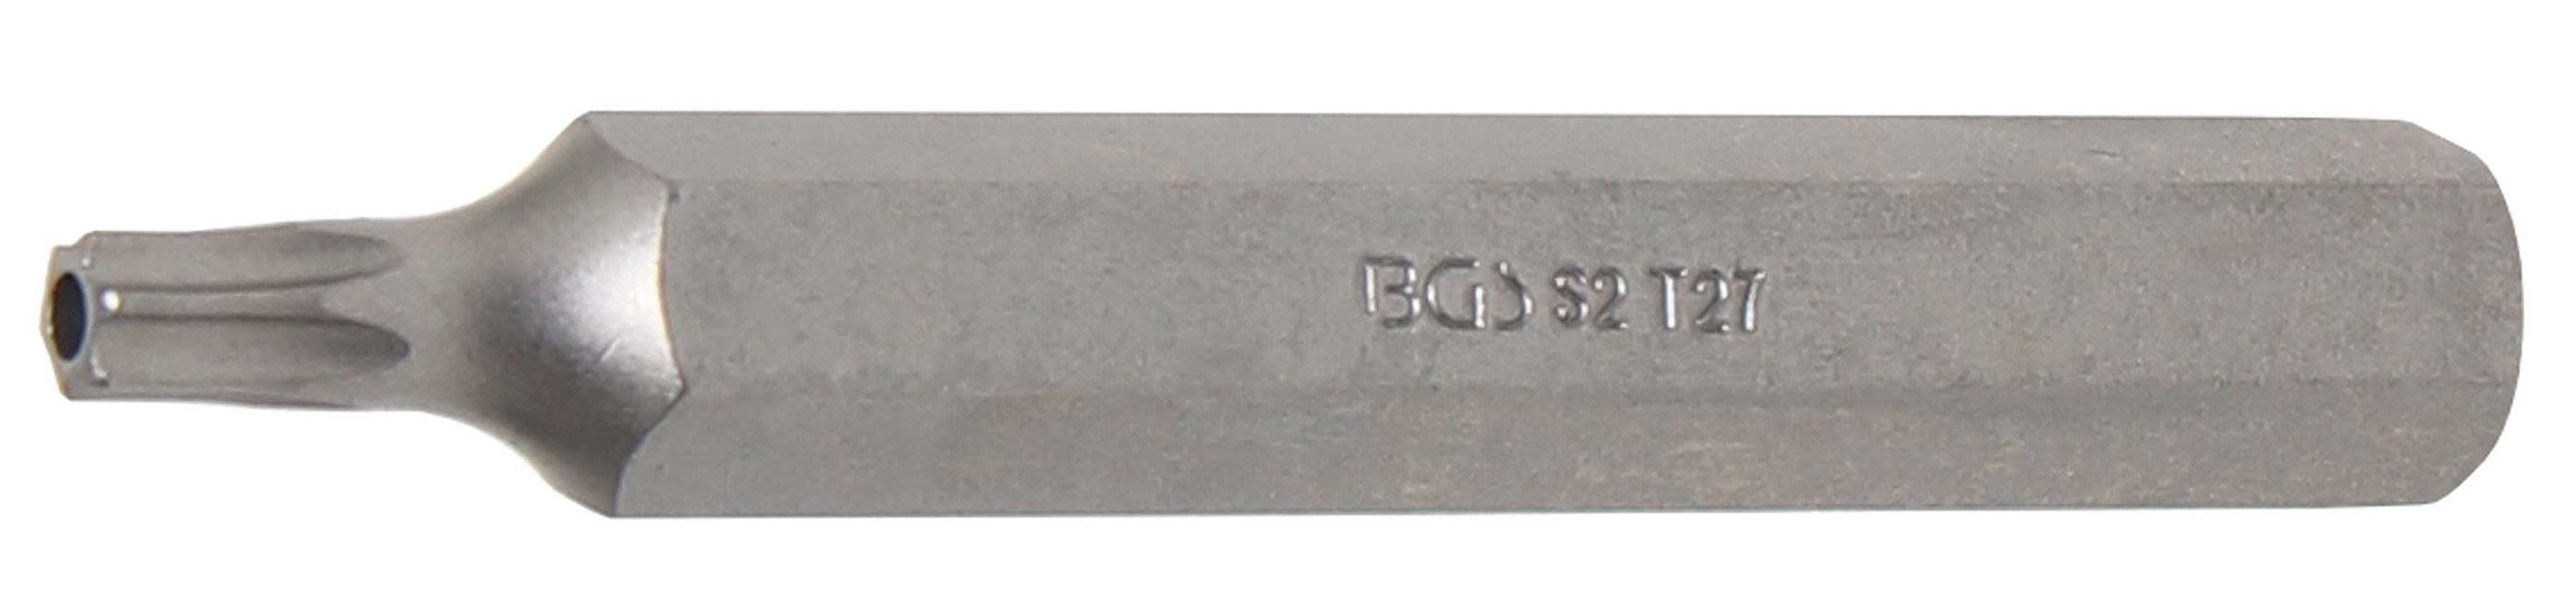 BGS 4727 Bit Torx T27 cu gaura de securizare, lungime 75mm, antrenare 10mm(3/8")